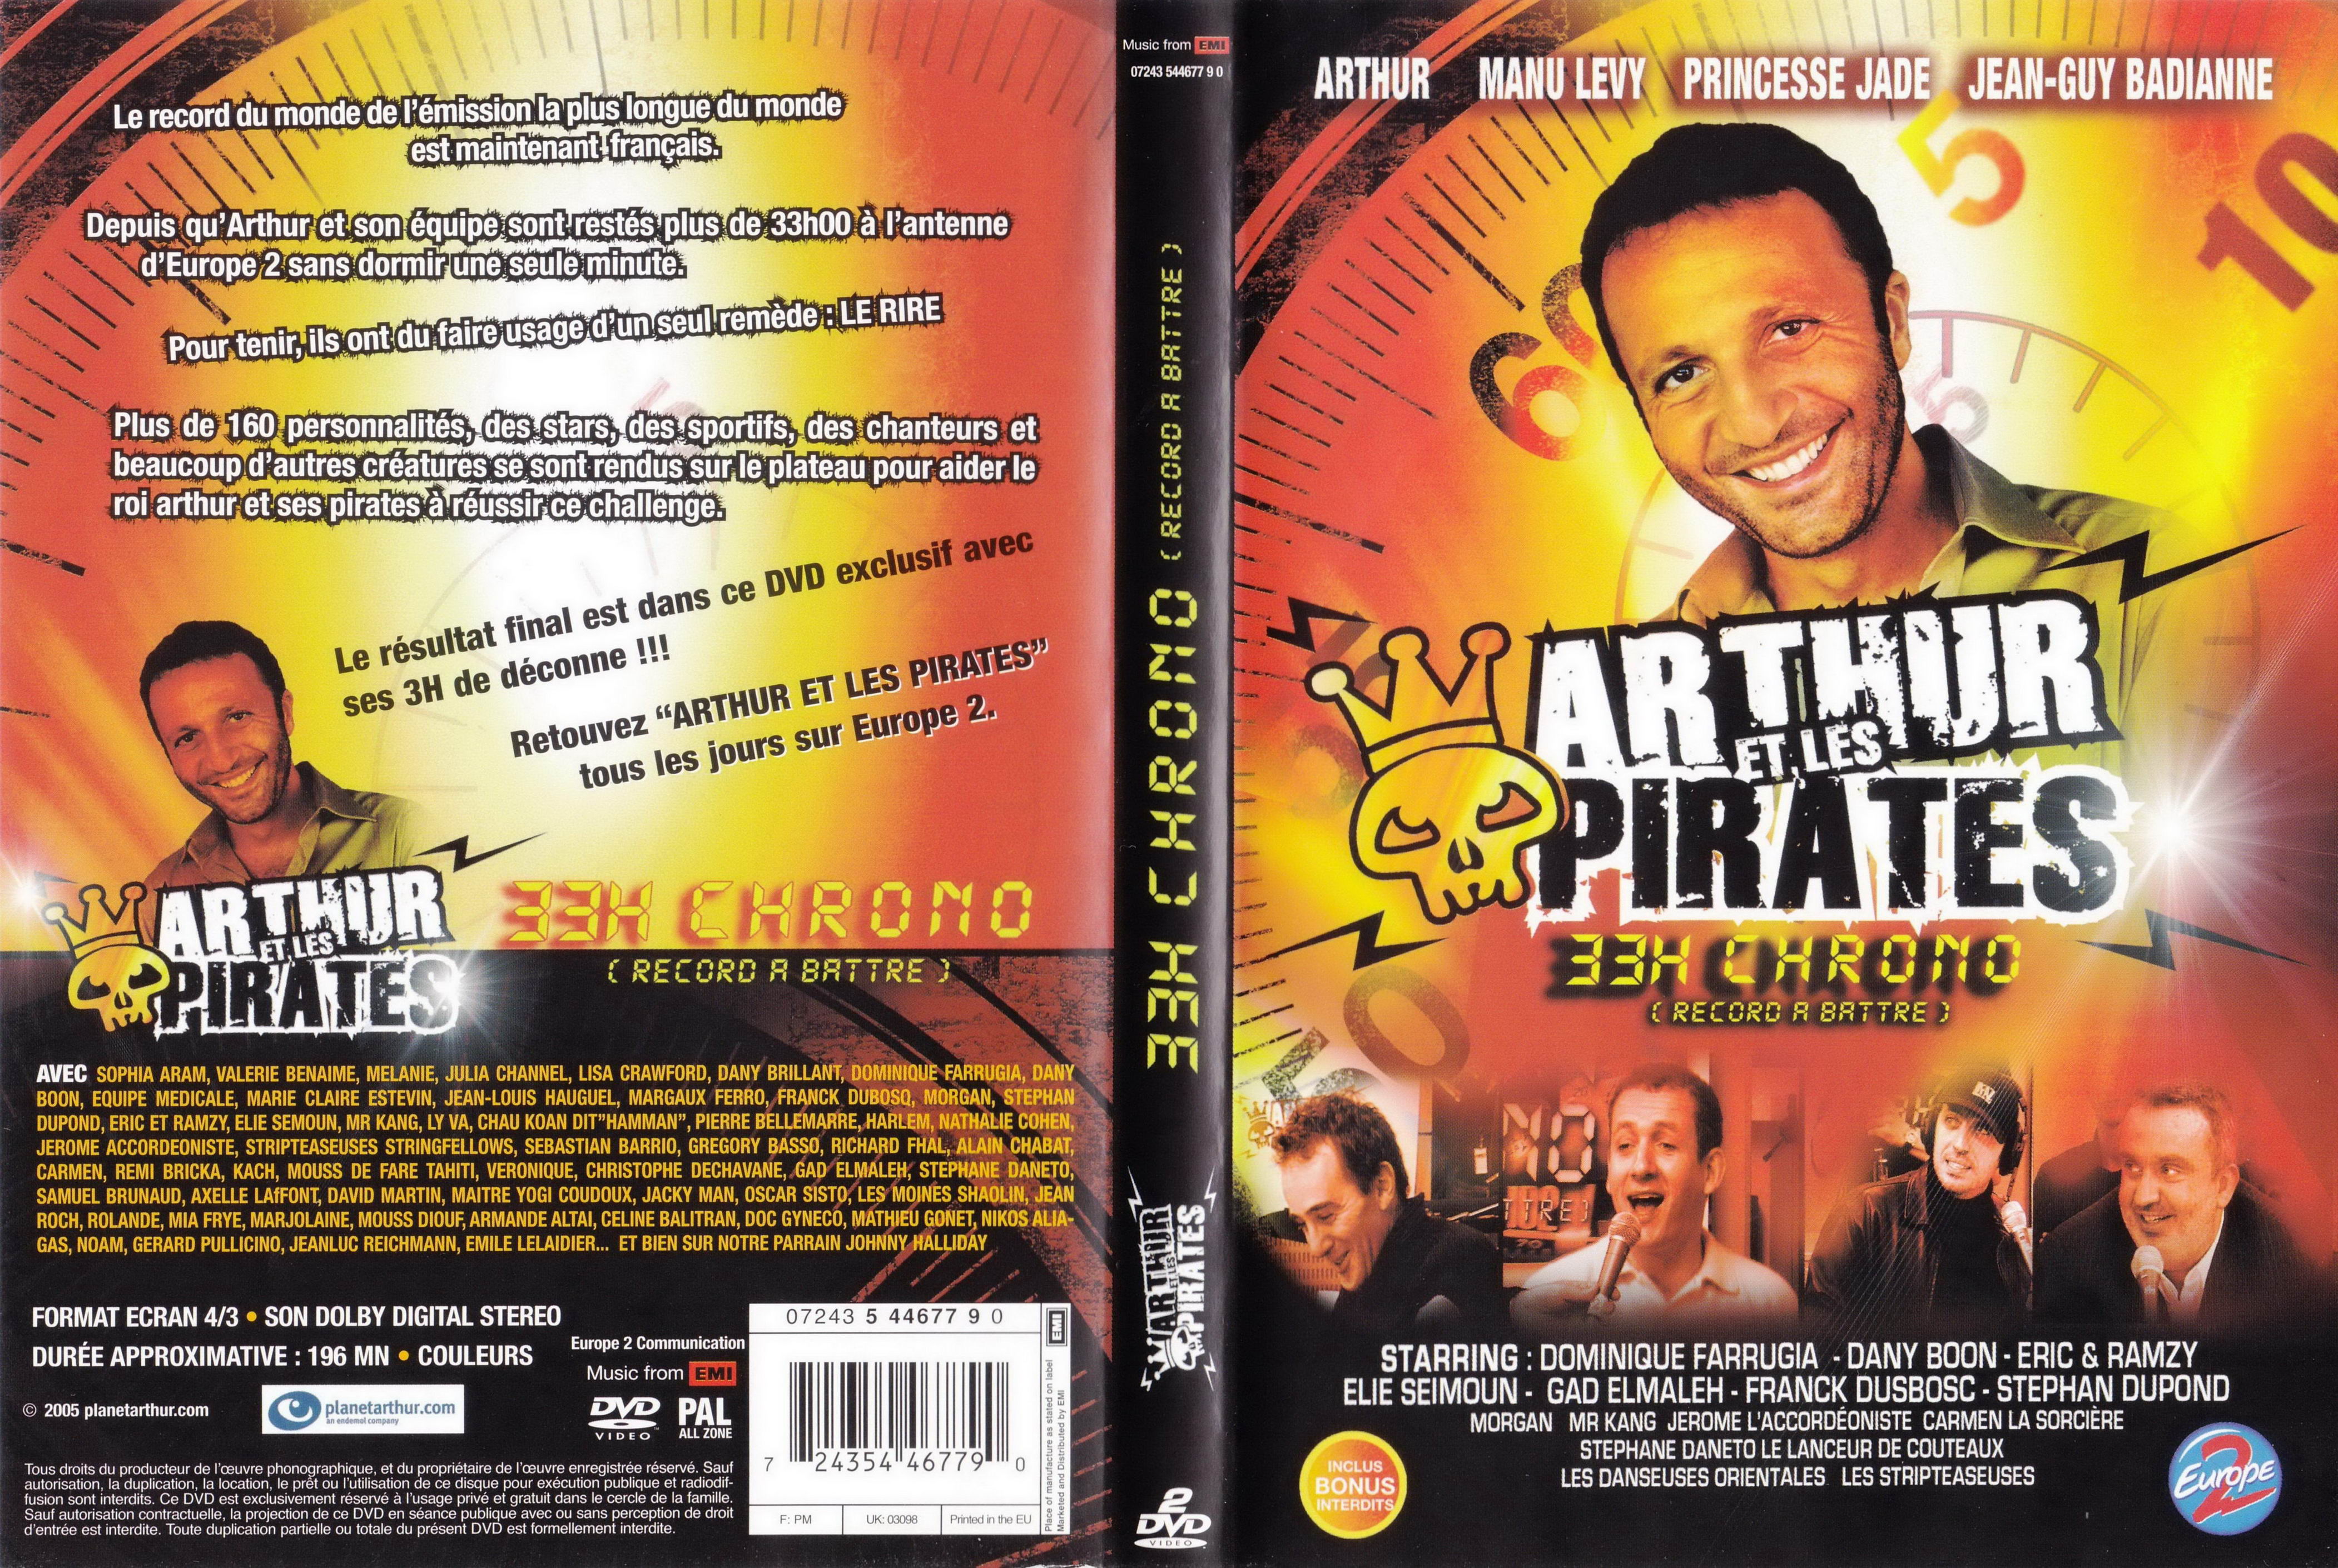 Jaquette DVD Arthur et les pirates 33H chrono